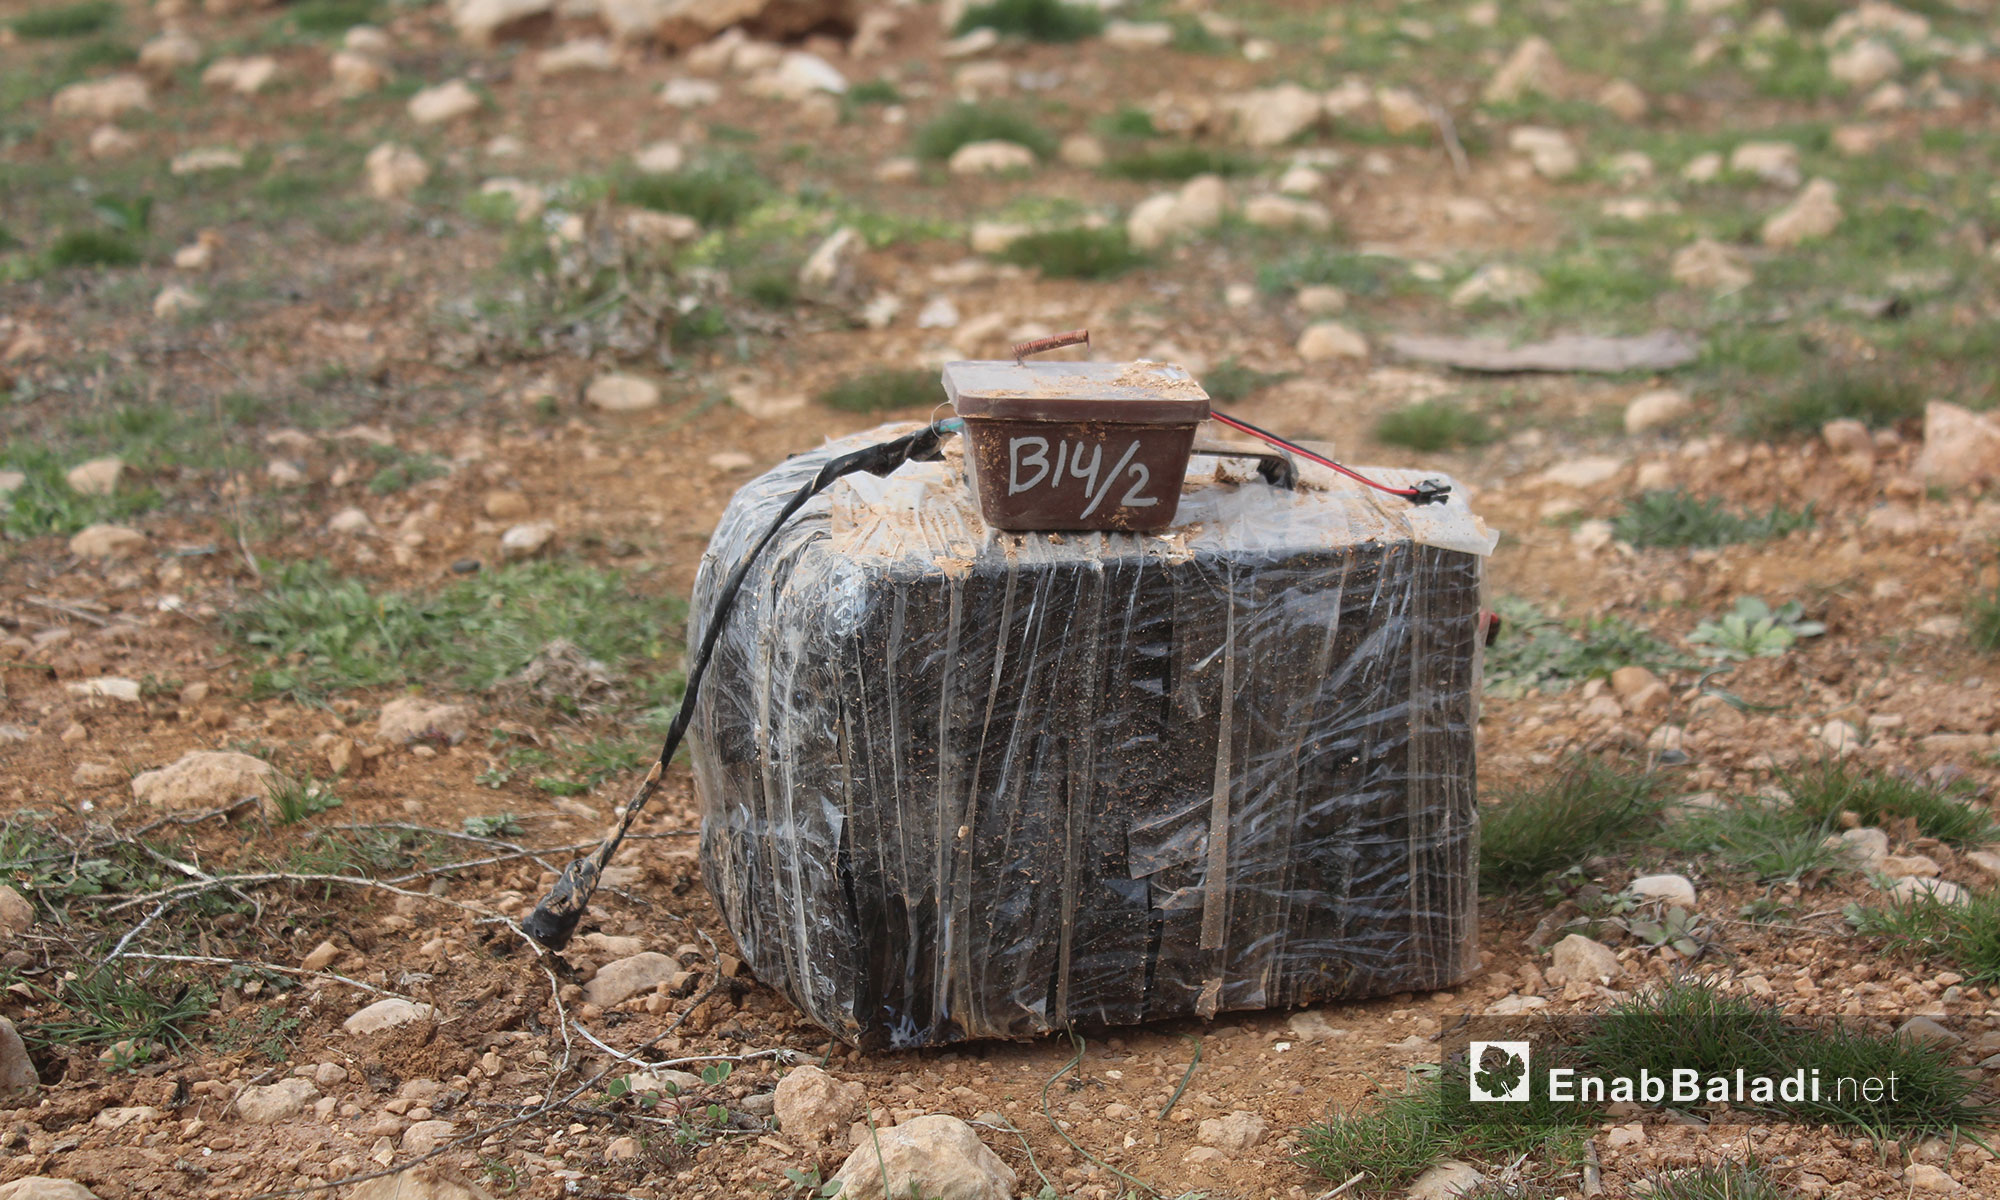 أحد الألغام التي زرعها مقاتلو "تنظيم الدولة" في محيط الباب - 12 شباط 2017 (عنب بلدي)